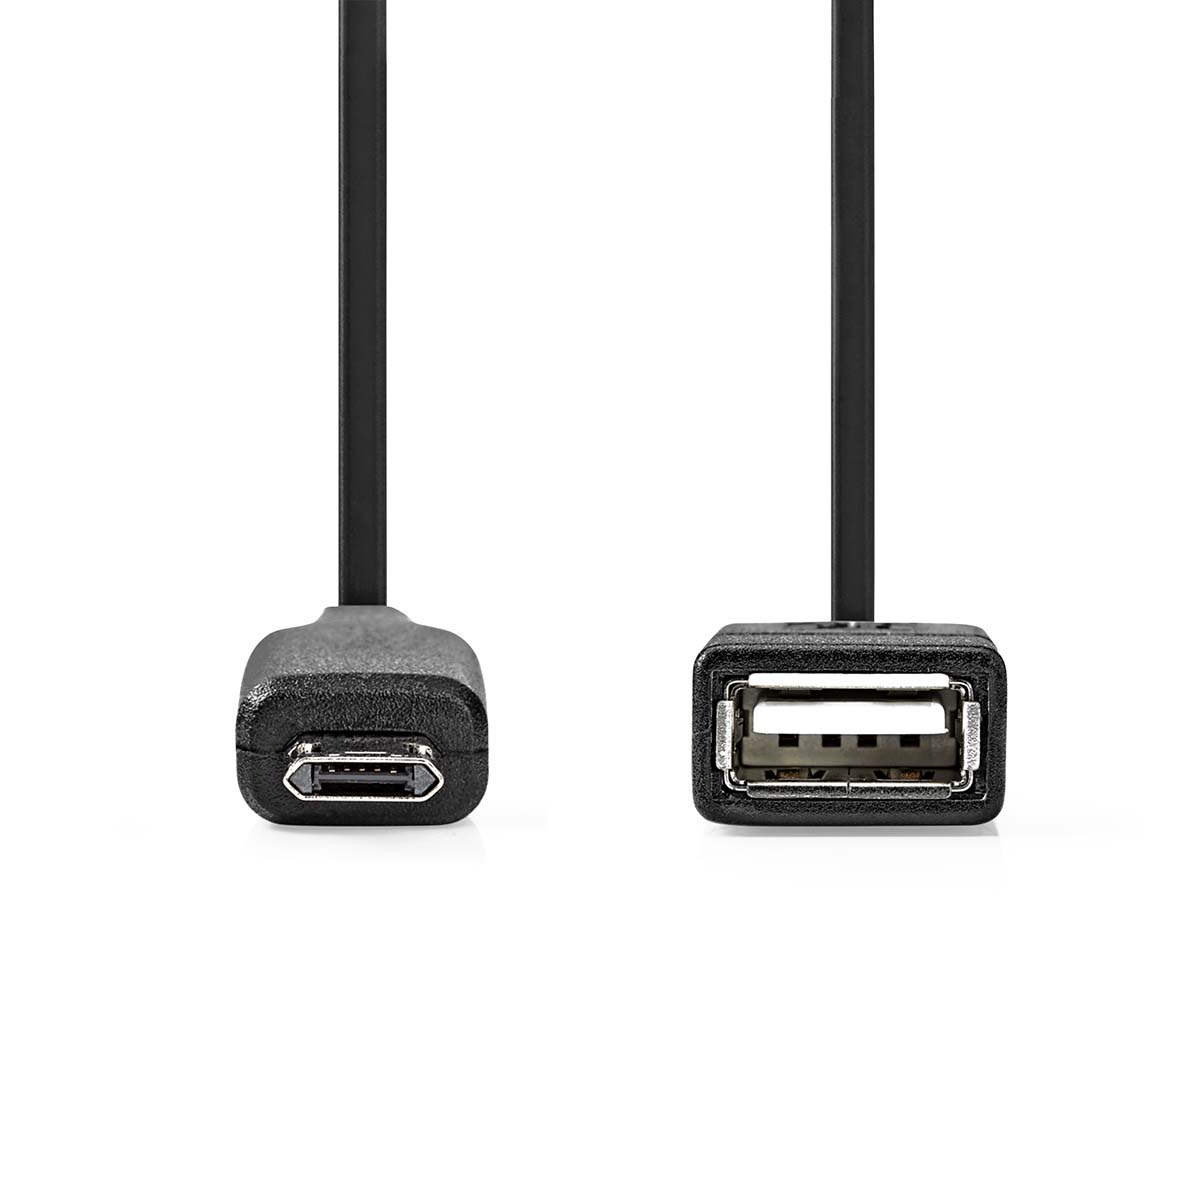 NEDIS CCGP60515BK02 USB Adapter Micro-B